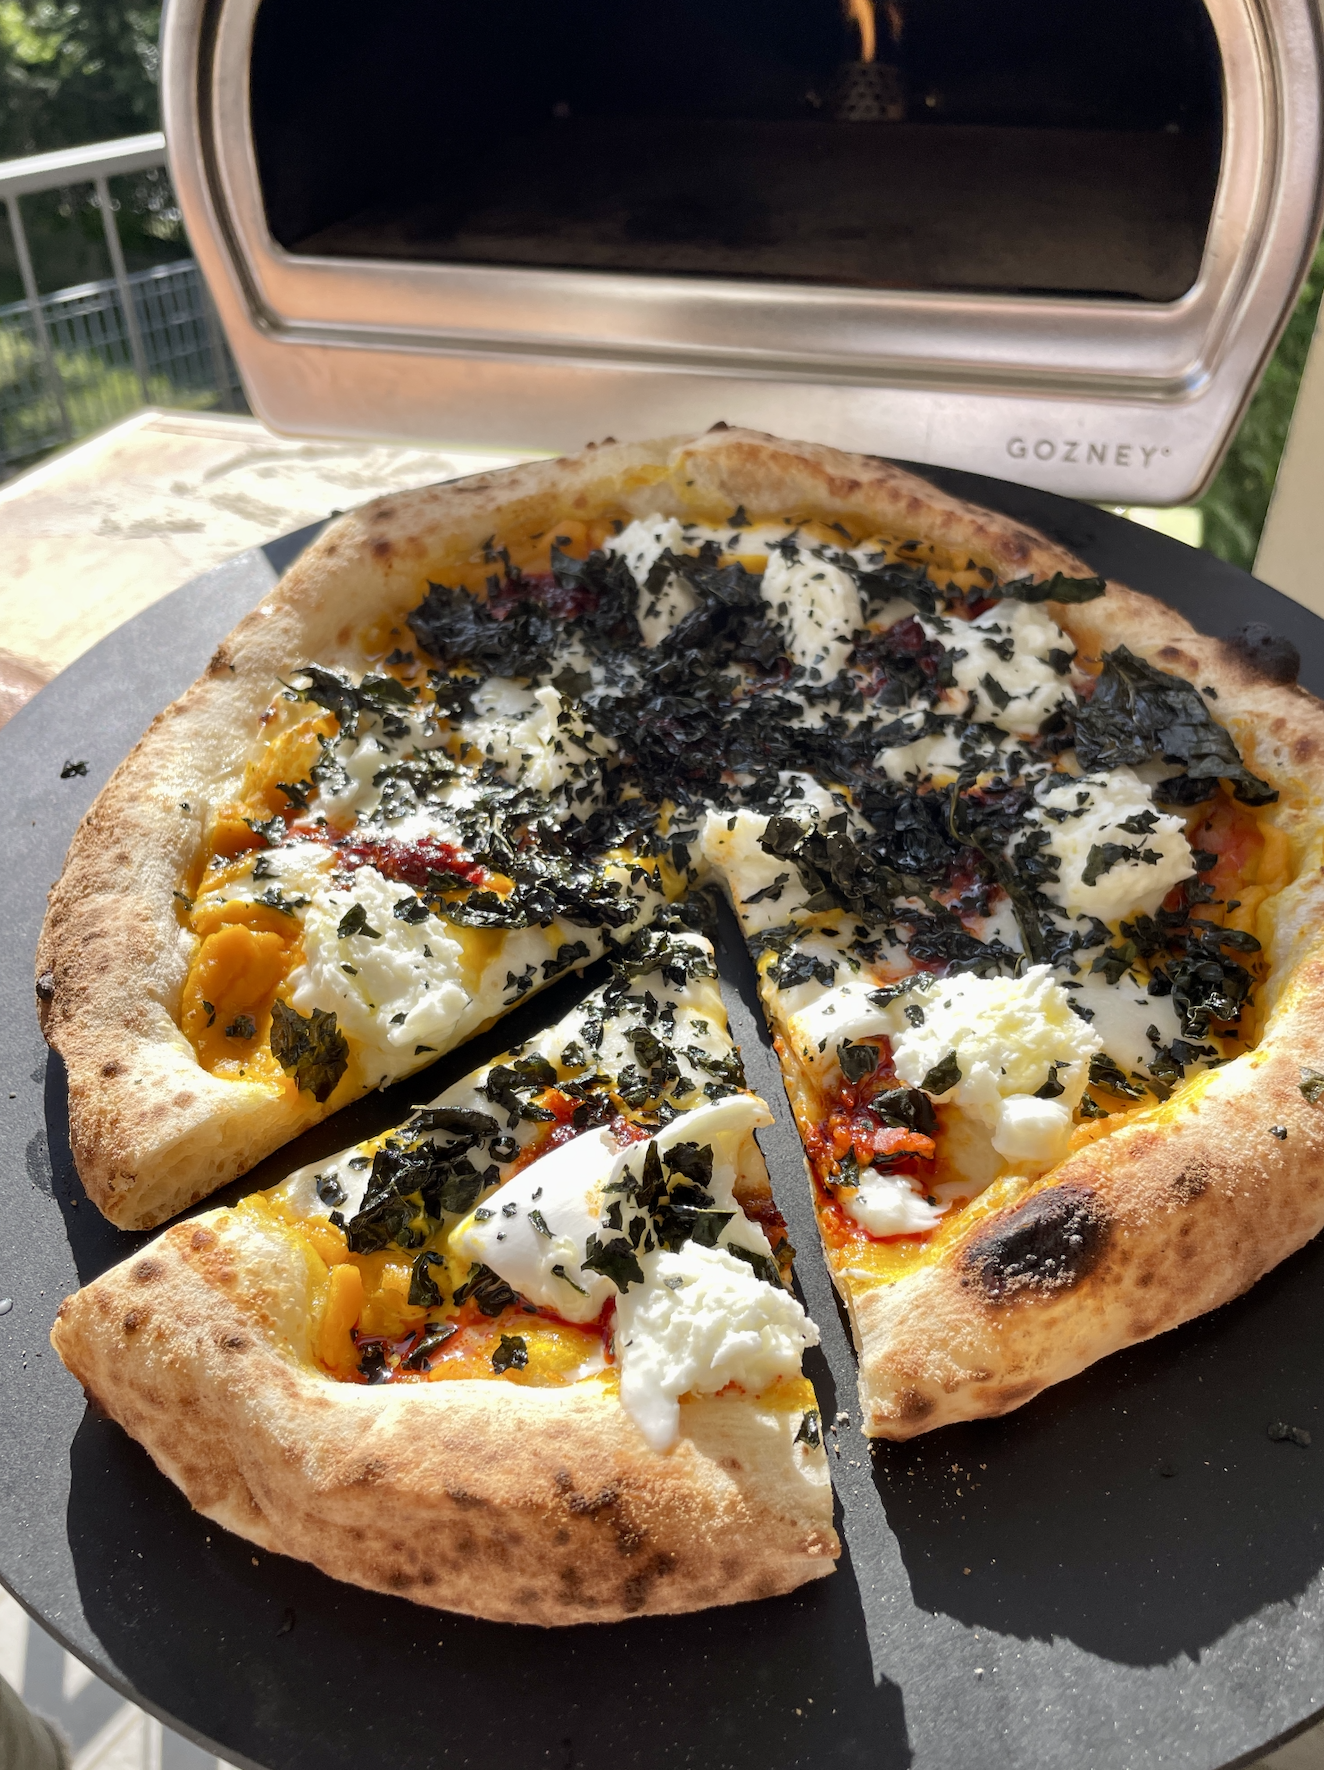 sourdough pizza expert consultant recipe creator chef andrea danelli from sri lanka england italy europe @theheartofpizza on instagram social media 5